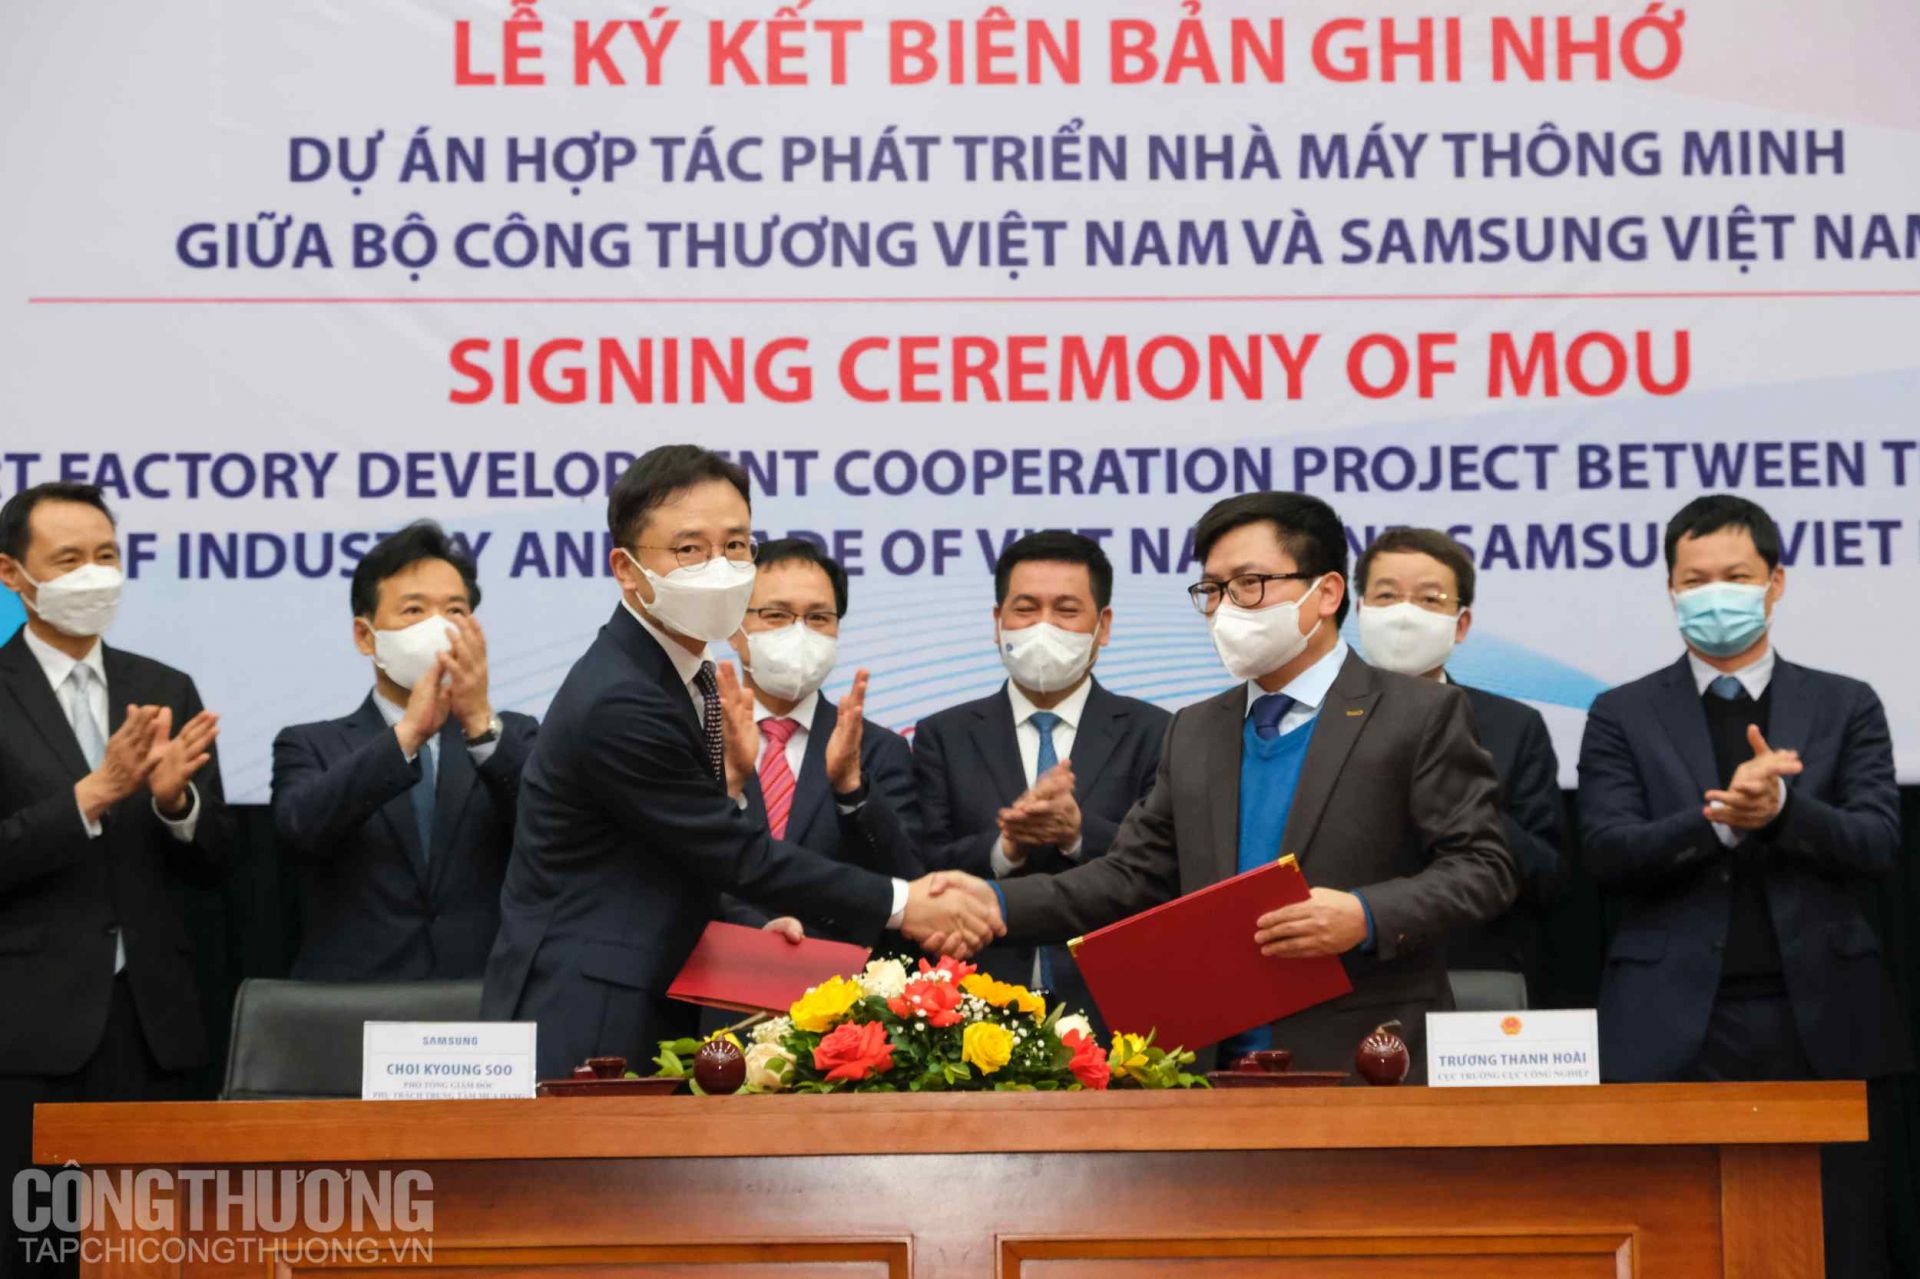 Lễ ký kết Biên bản ghi nhớ hợp tác phát triển Nhà máy thông minh giữa Bộ Công Thương và Samsung Việt Nam